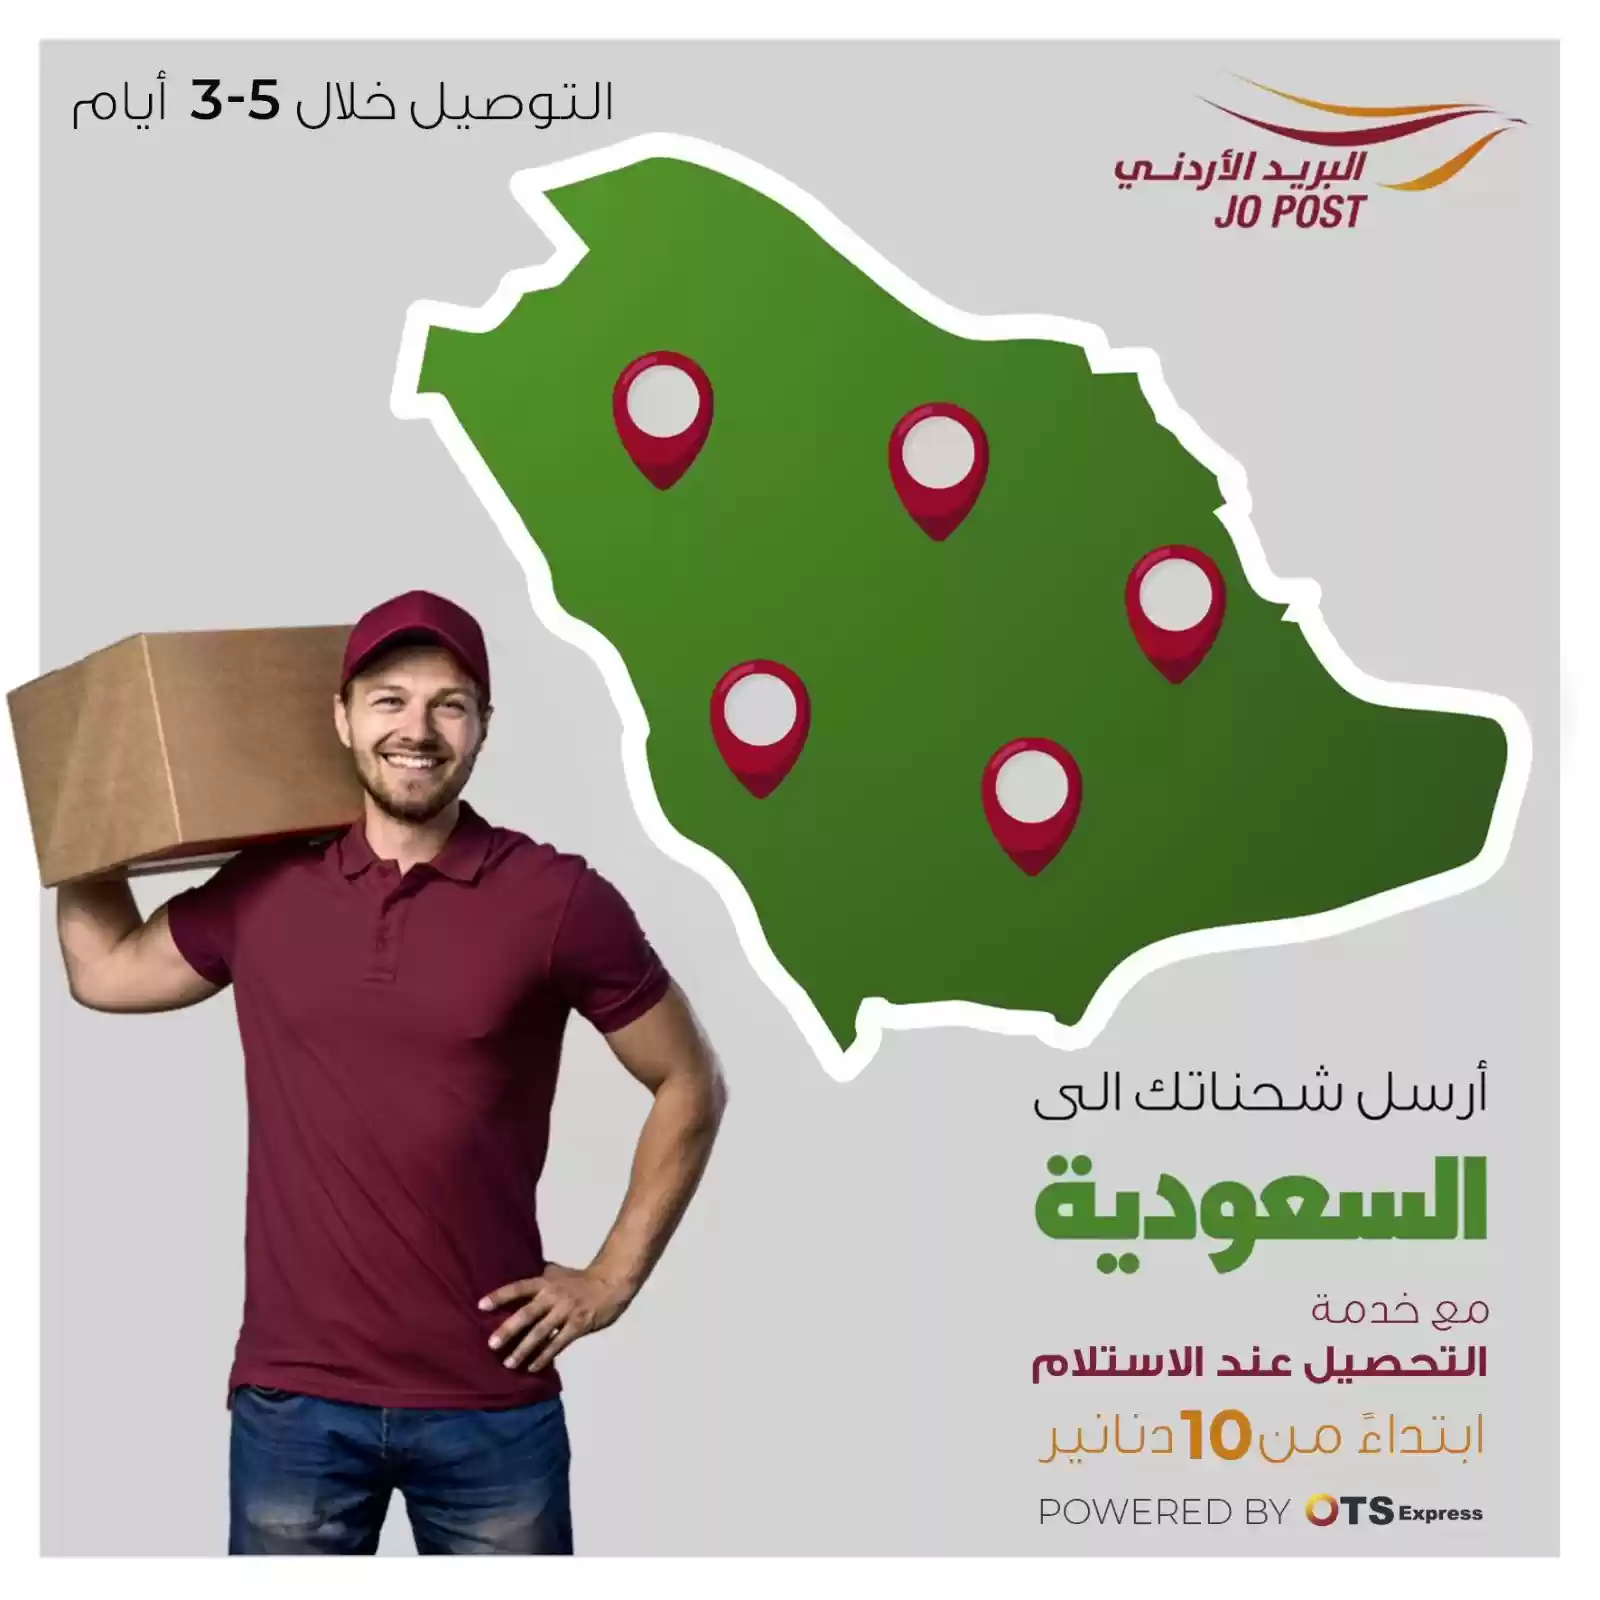 البريد الأردني: إطلاق خدمة التحصيل عند الاستلام للشحنات المرسلة للسعودية